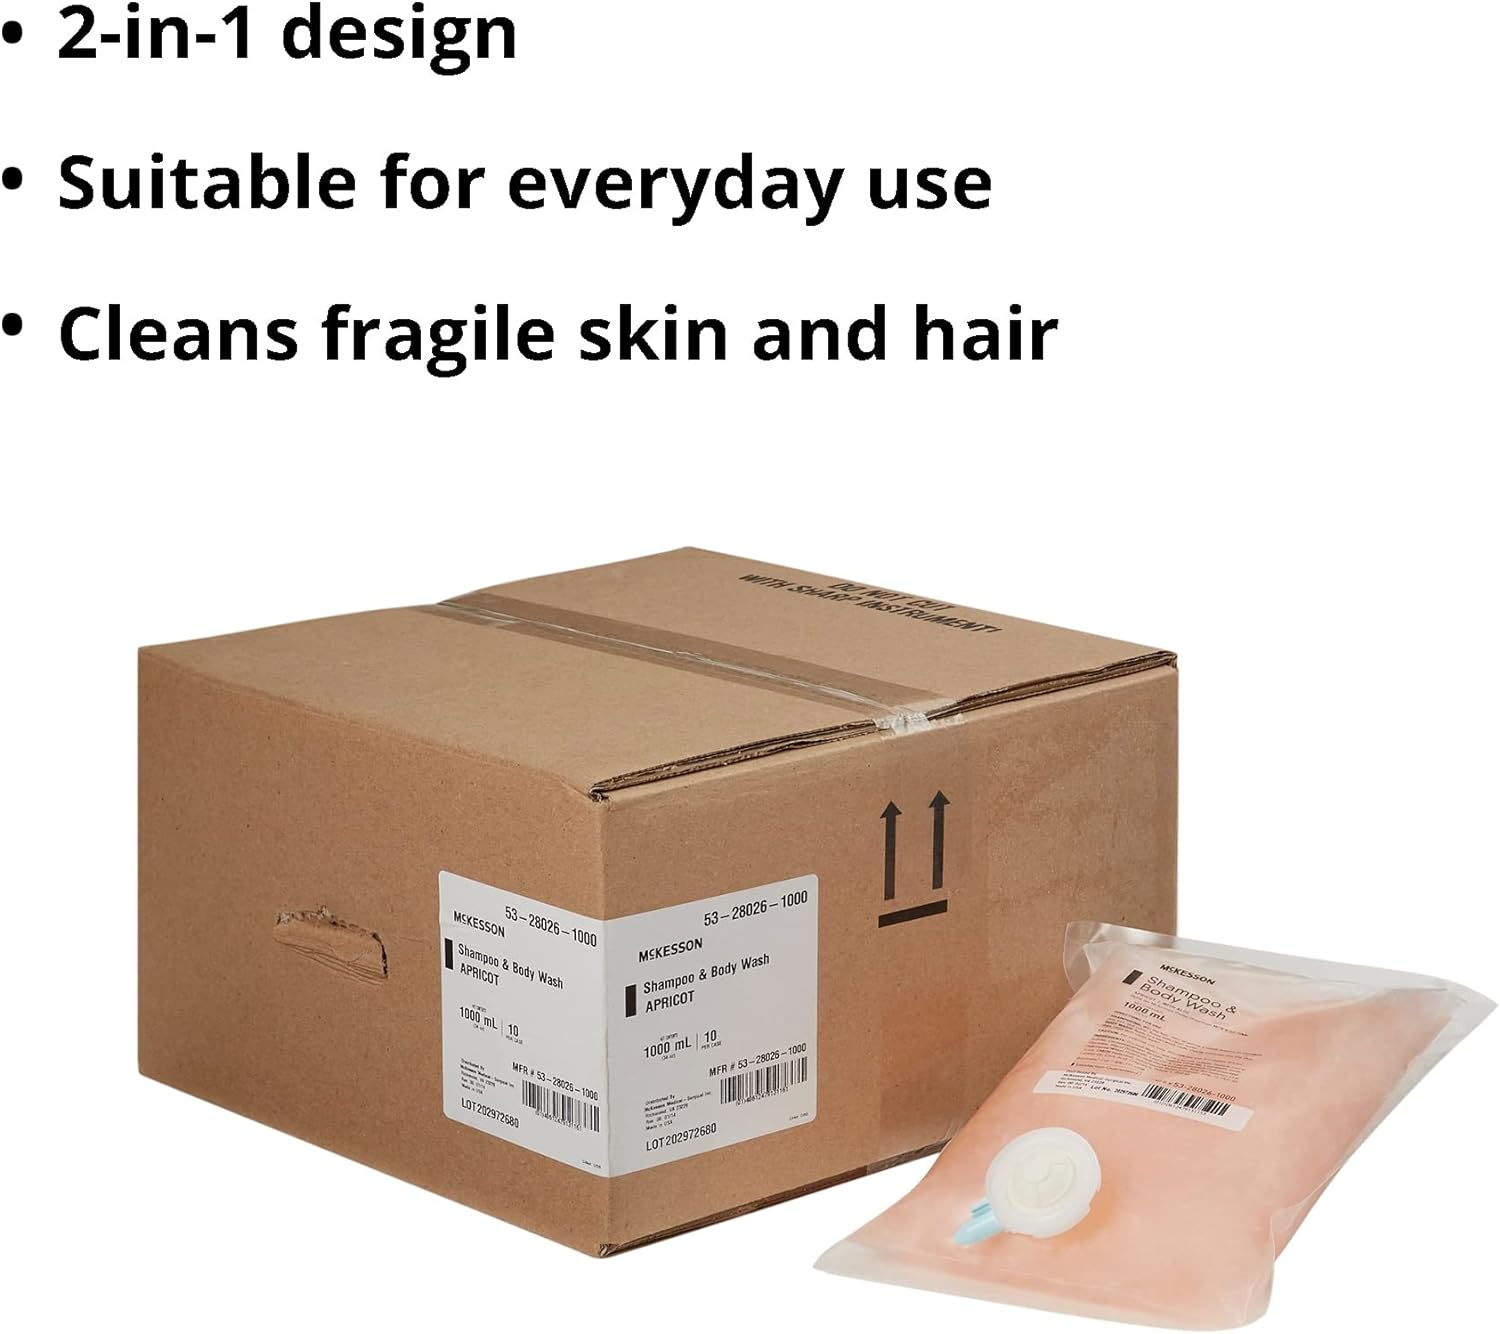 McKesson Body Wash and Shampoo, Refill Bag, Apricot Scent 1000 mL, 1 Count